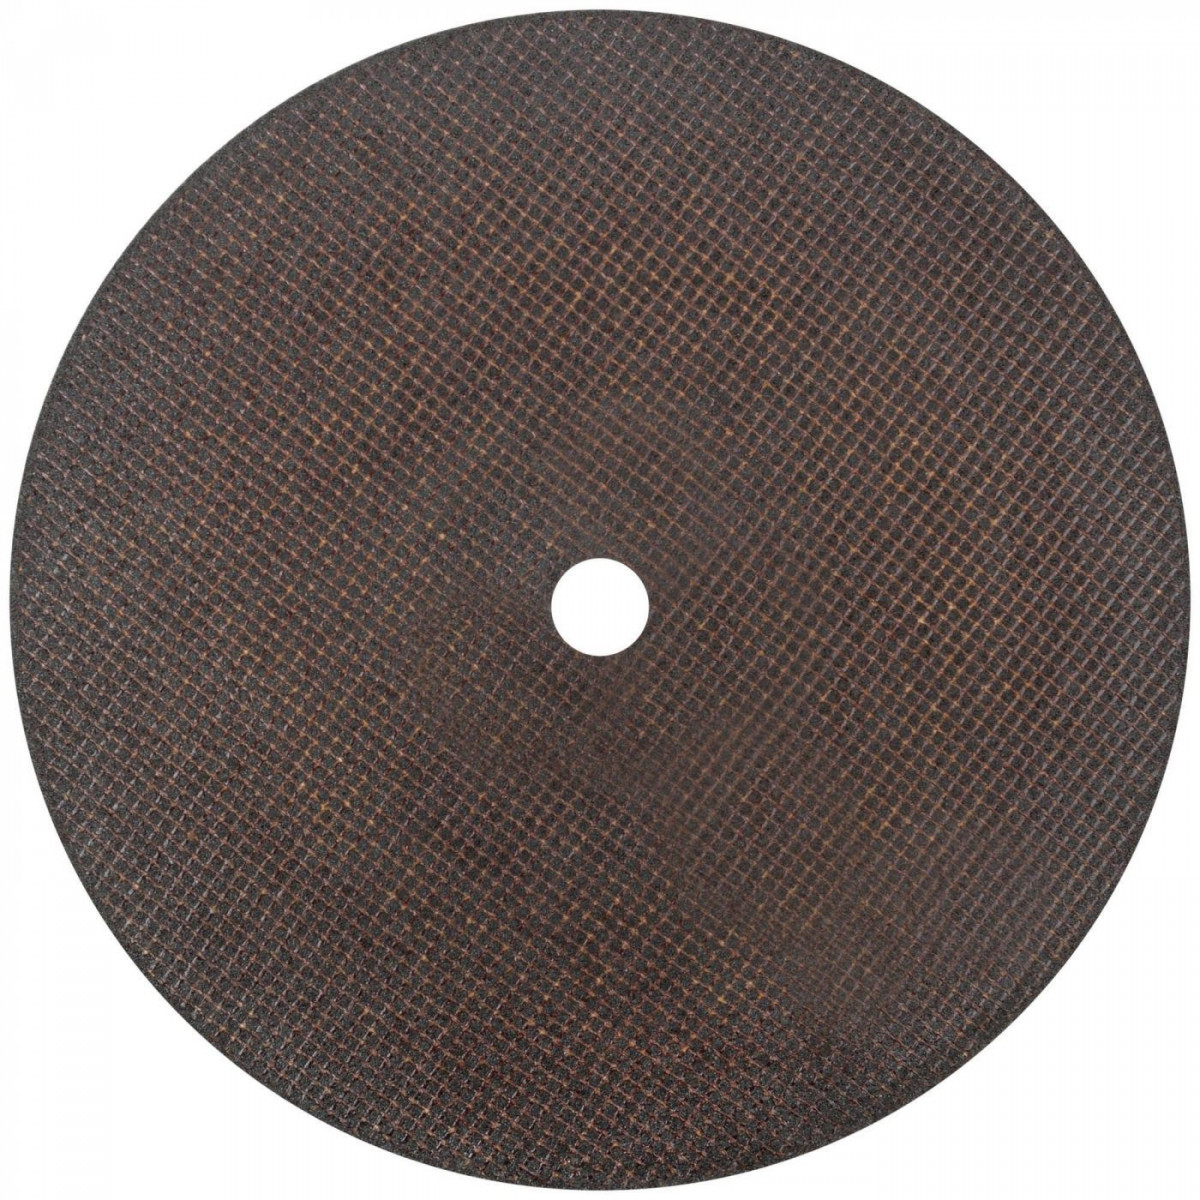 Профессиональный диск отрезной по металлу Т41-400 х 4,0 х 32 (5/25), Cutop Profi